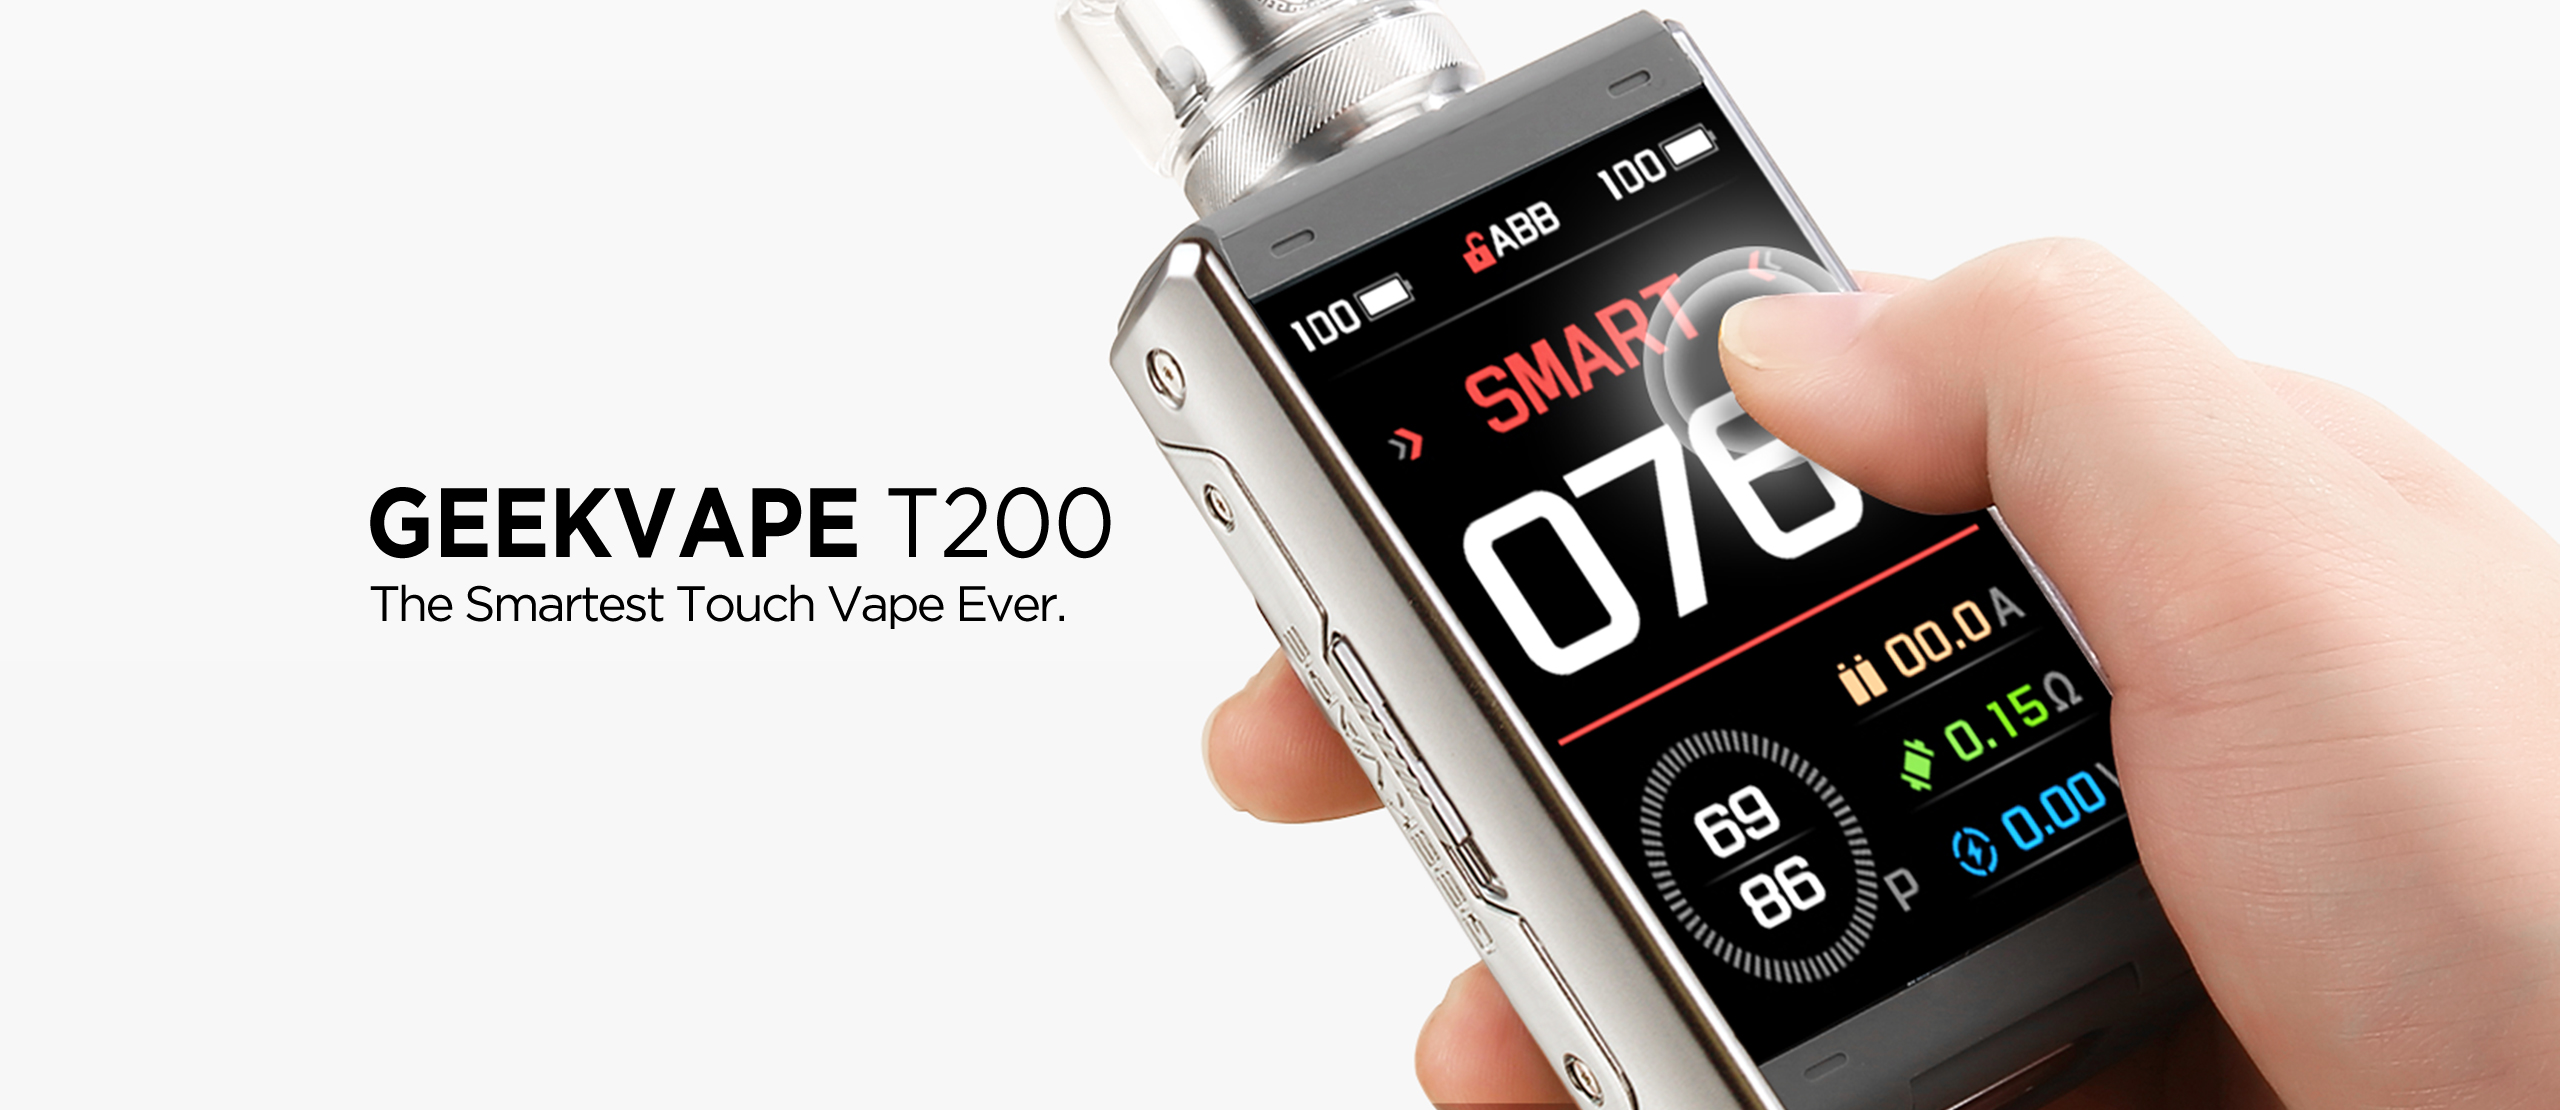 Geekvape T200